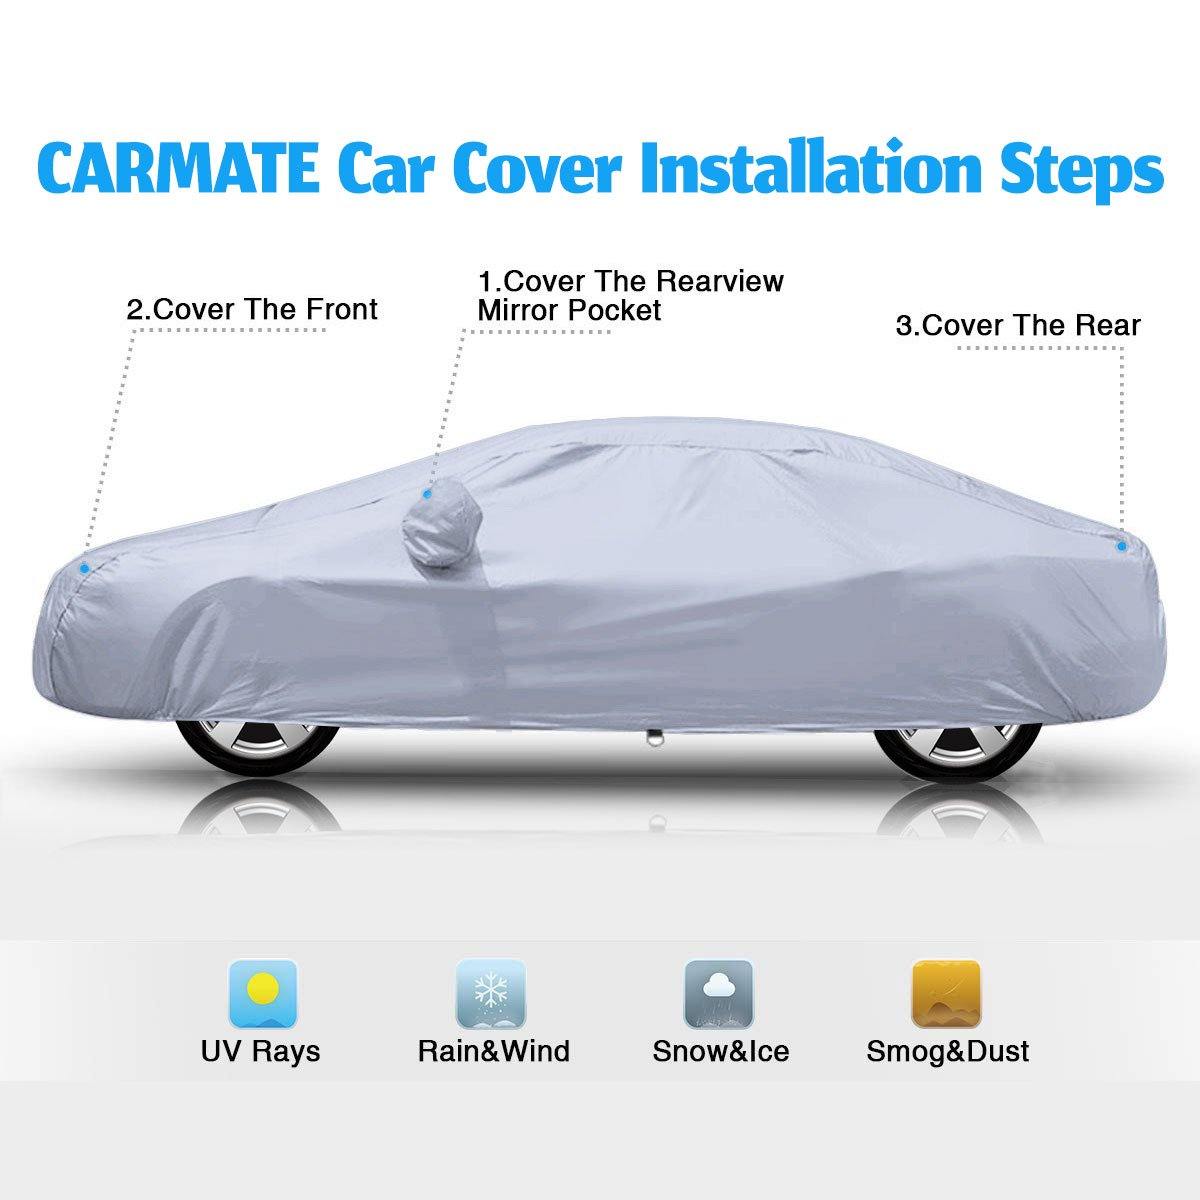 Carmate Premium Car Body Cover Silver Matty (Silver) for  Toyota - Land Cruiser - CARMATE®